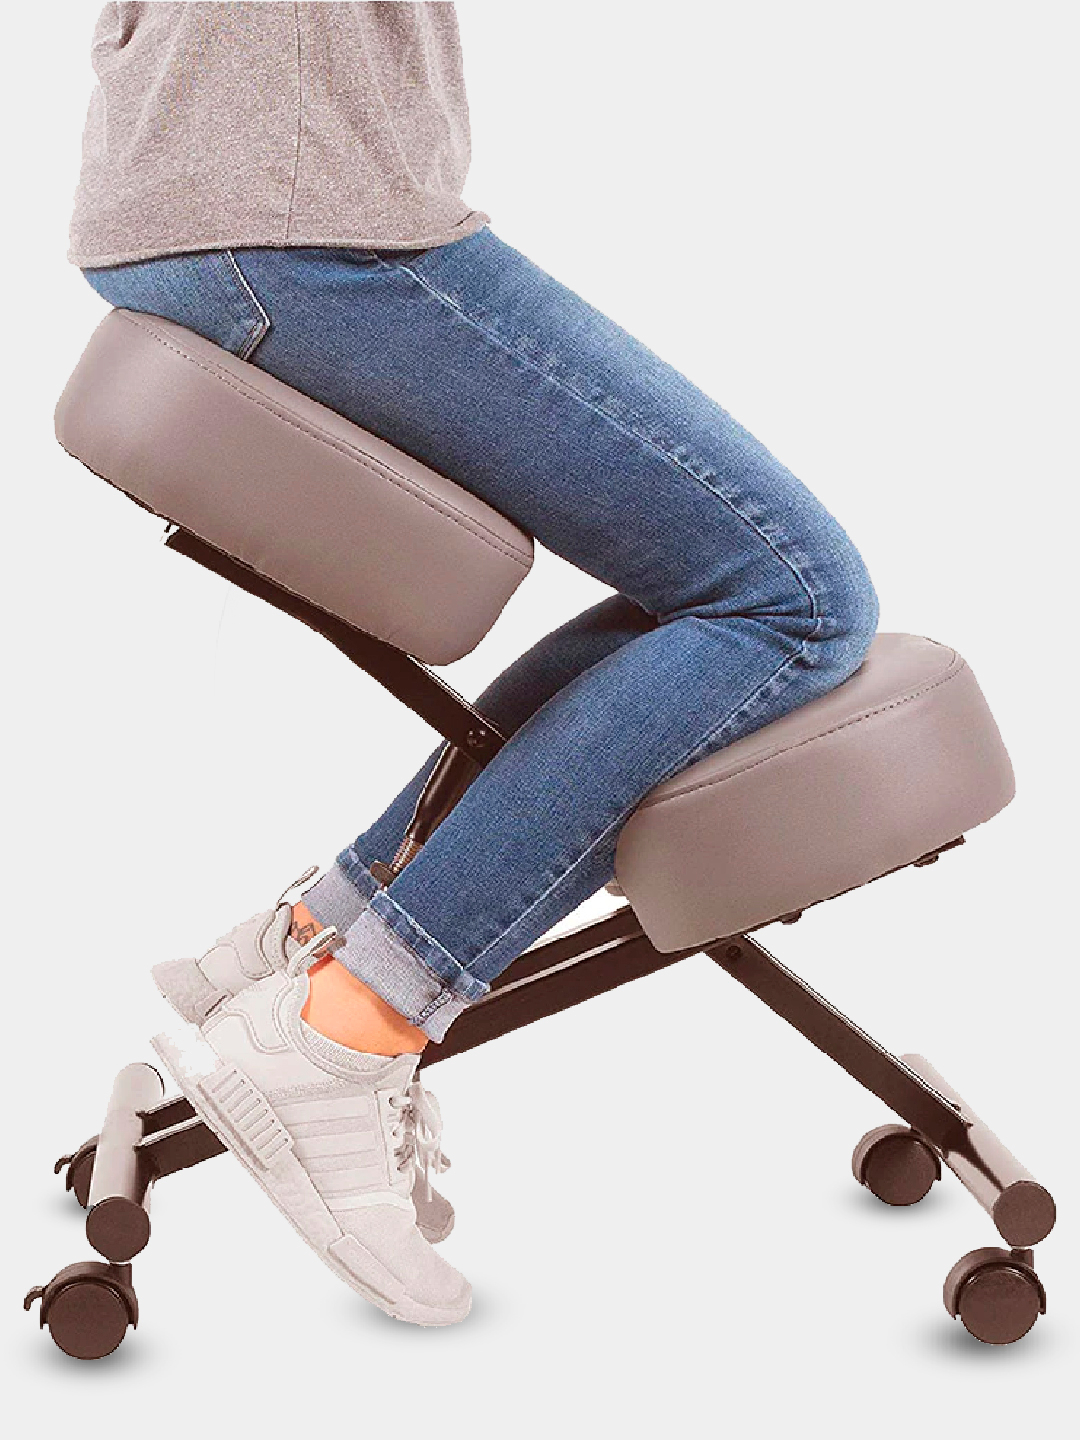 коленный стул для школьника со спинкой